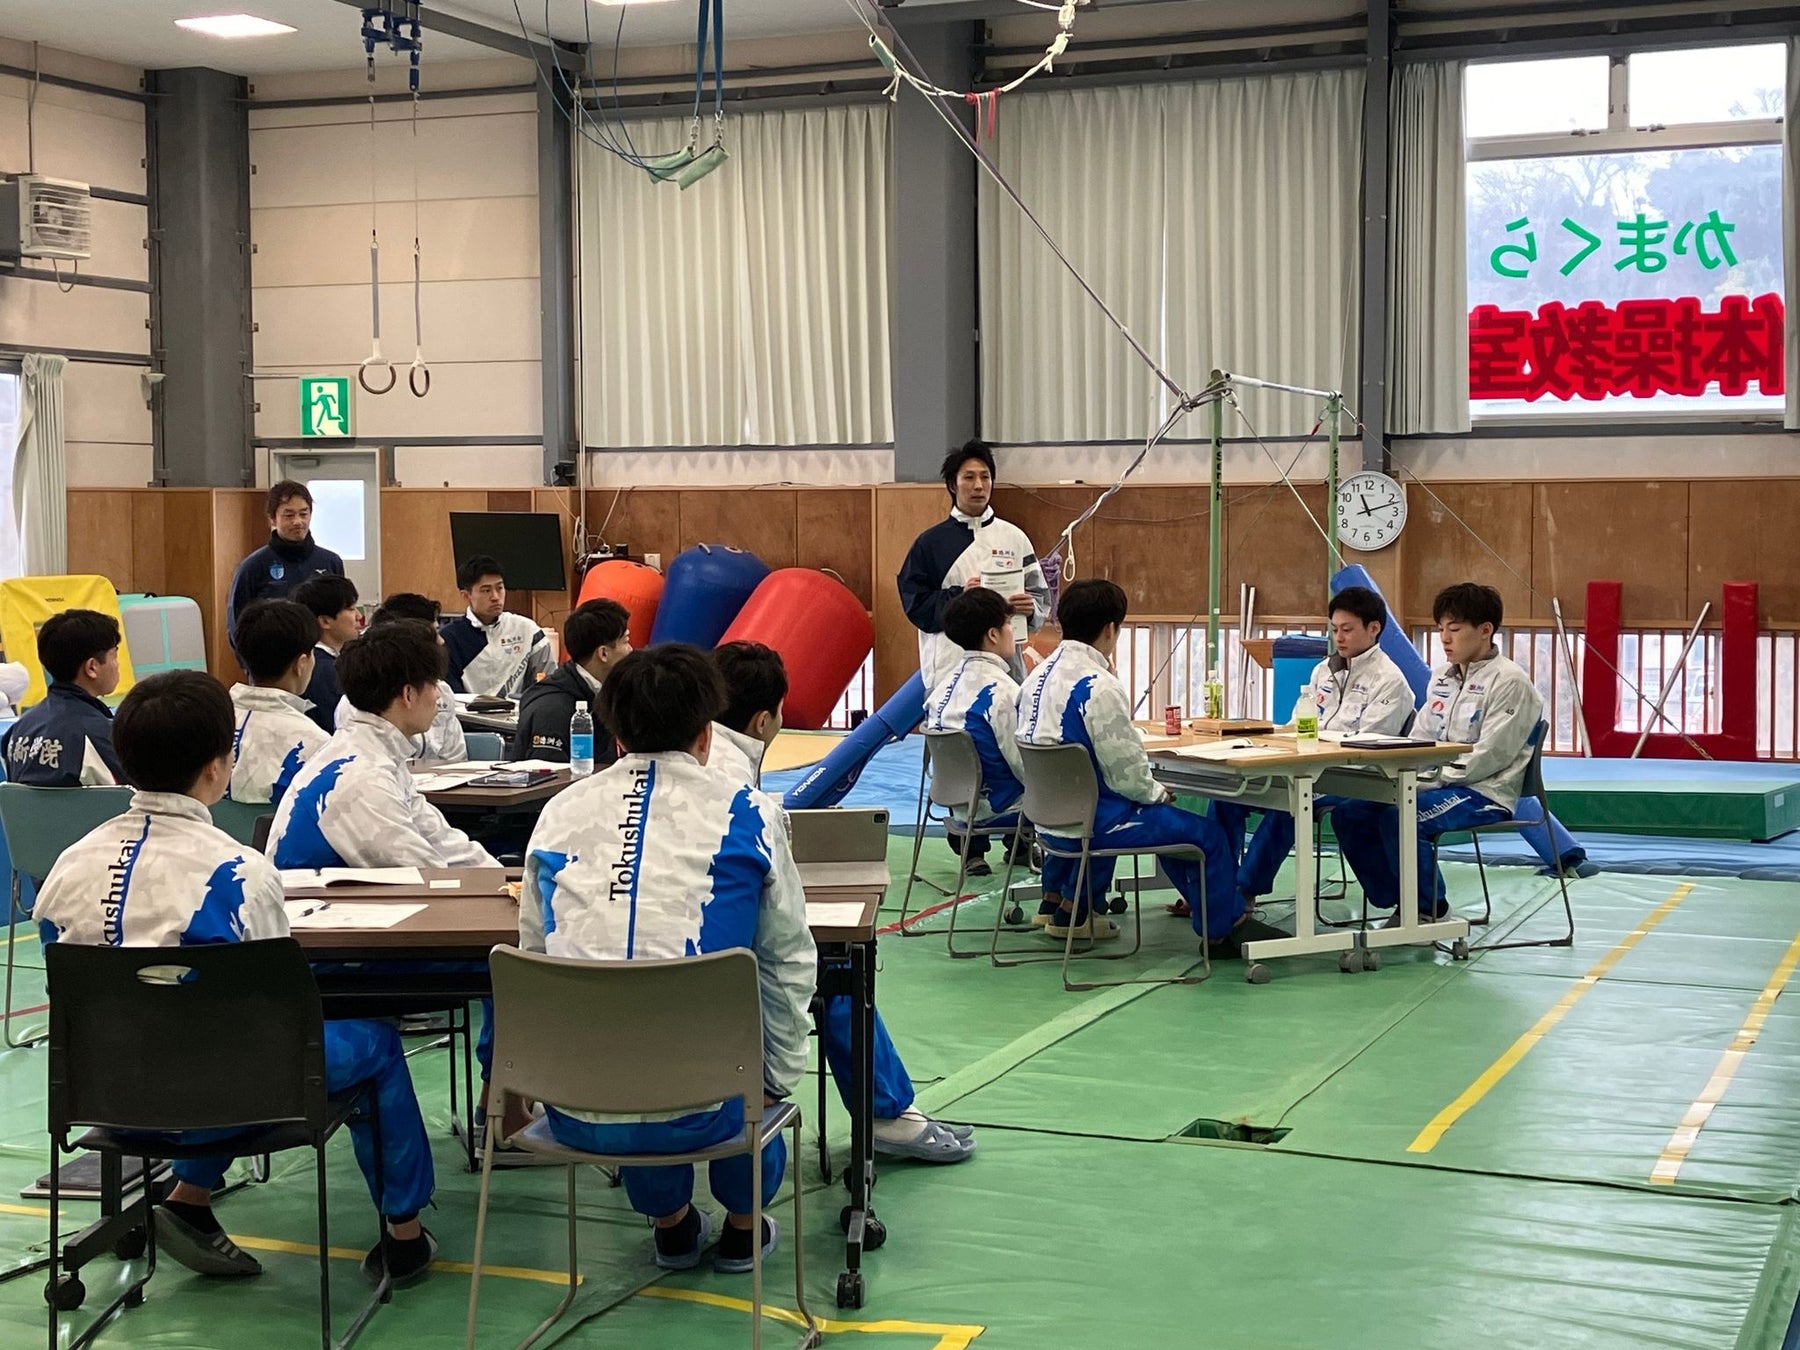 ［開催レポート］世界一に向けて徳洲会体操クラブが、トップアスリートの思考・行動習慣を学ぶ1day研修を開催